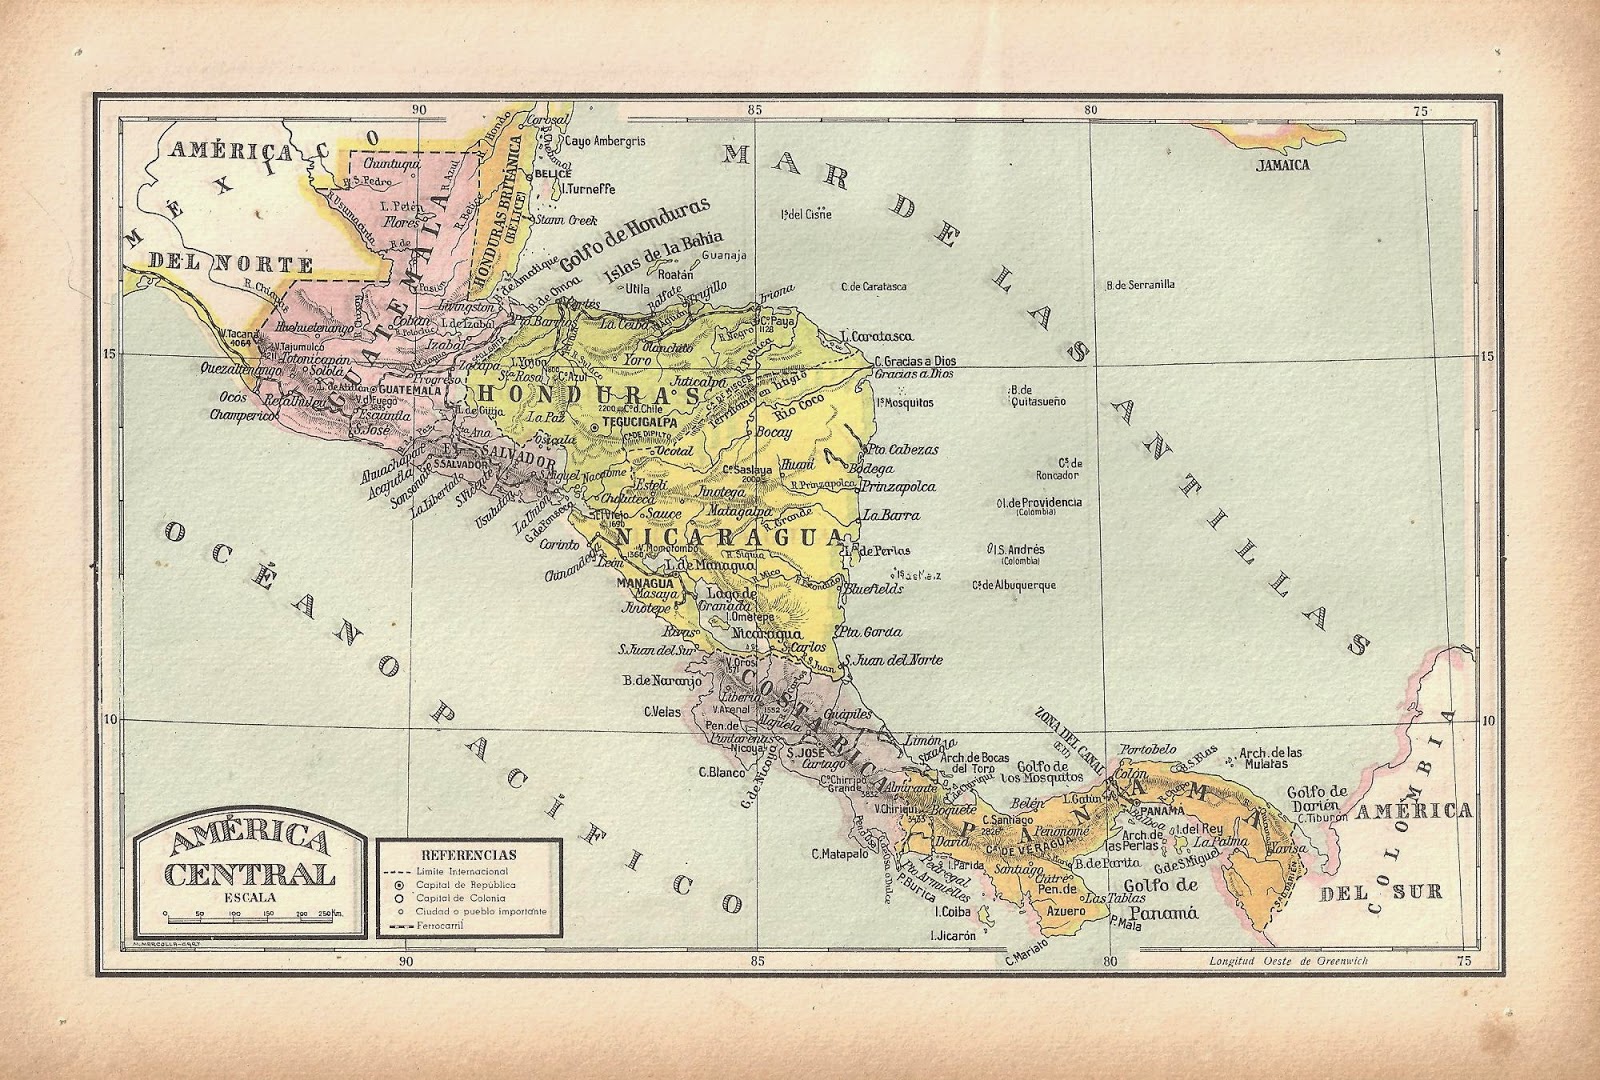 Cosas Elegidas: Mapas. America Central. 1948